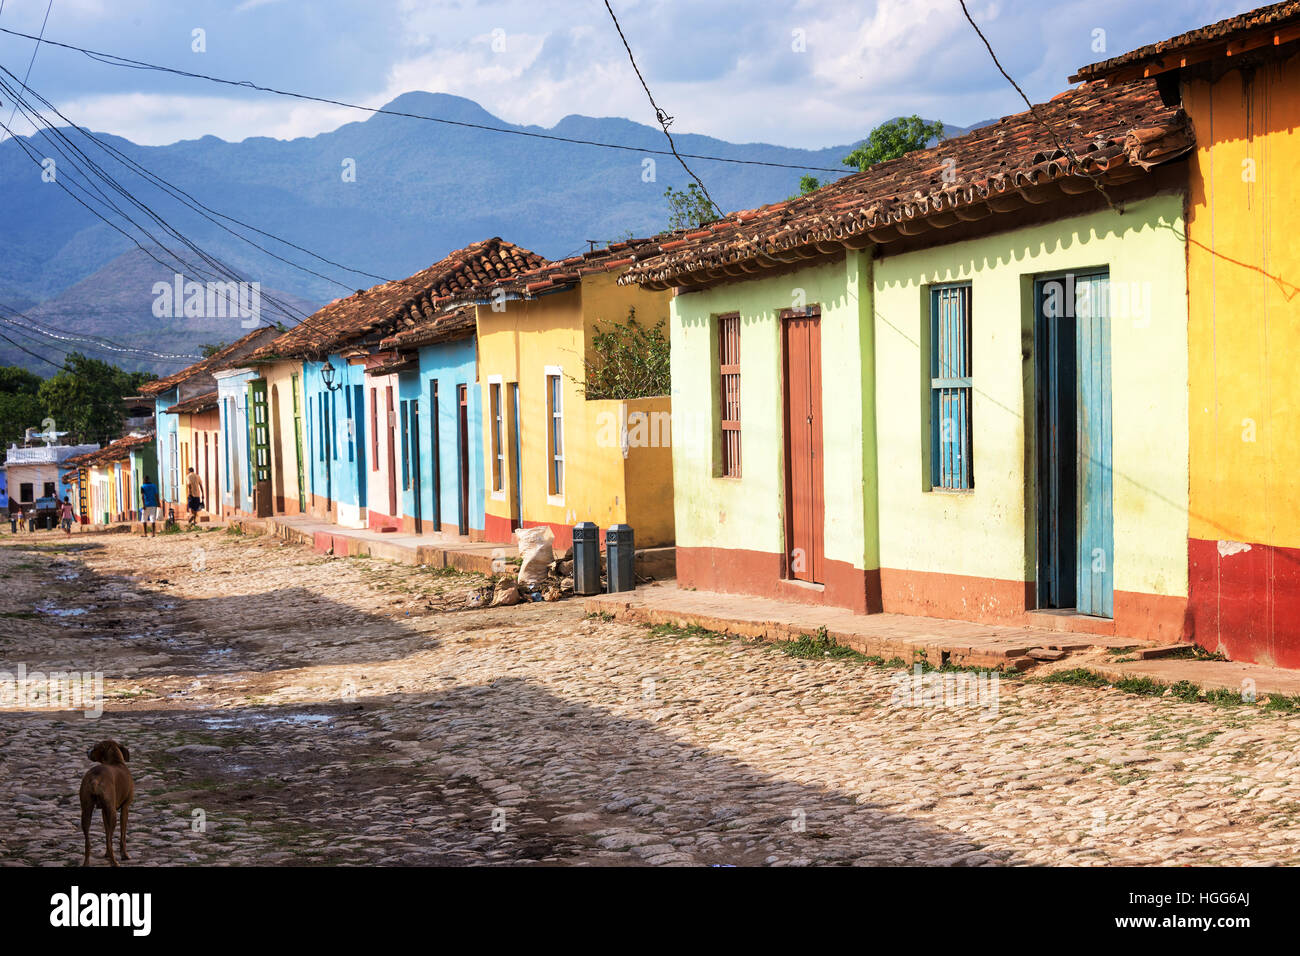 Bunte Häuser in einer asphaltierten Straße von Trinidad, Kuba Stockfoto